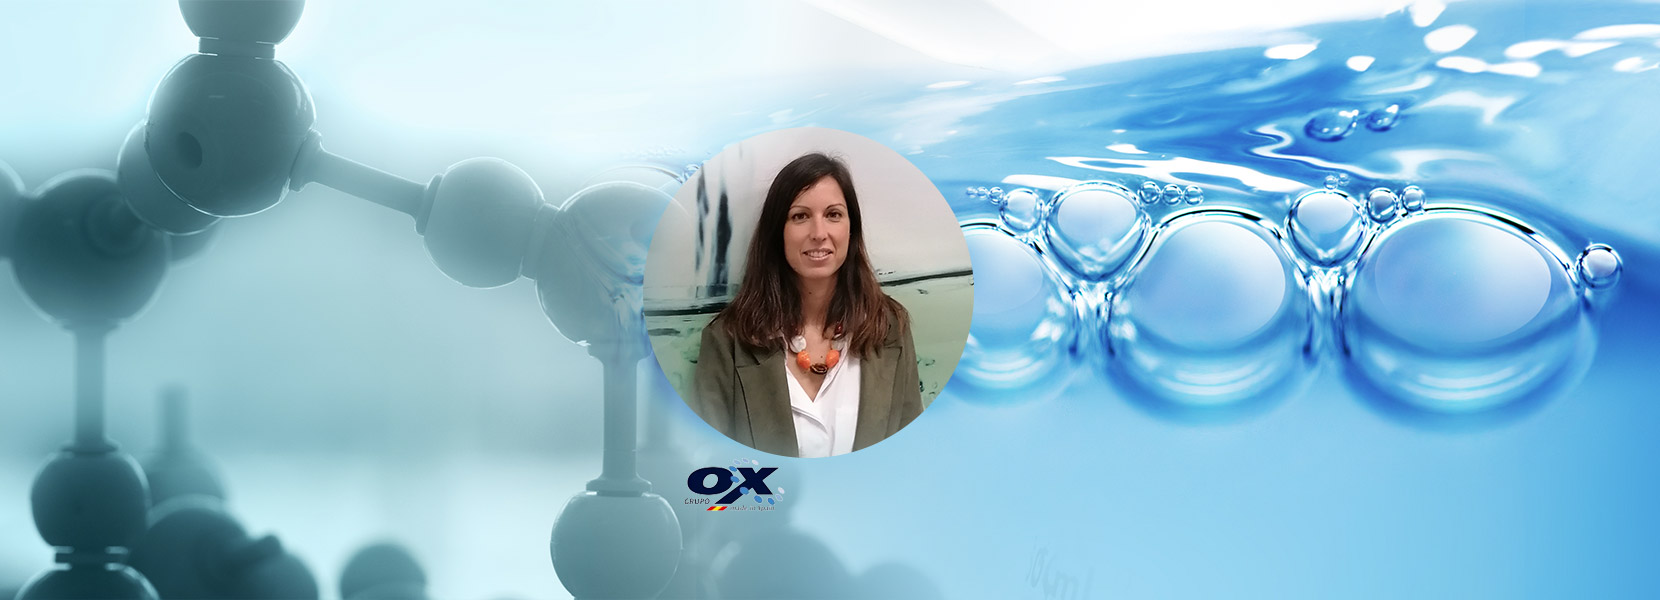 “Grupo OX está trasladando al sector de producción animal grandes avances en términos de evolución tecnológica y digitalización del agua”